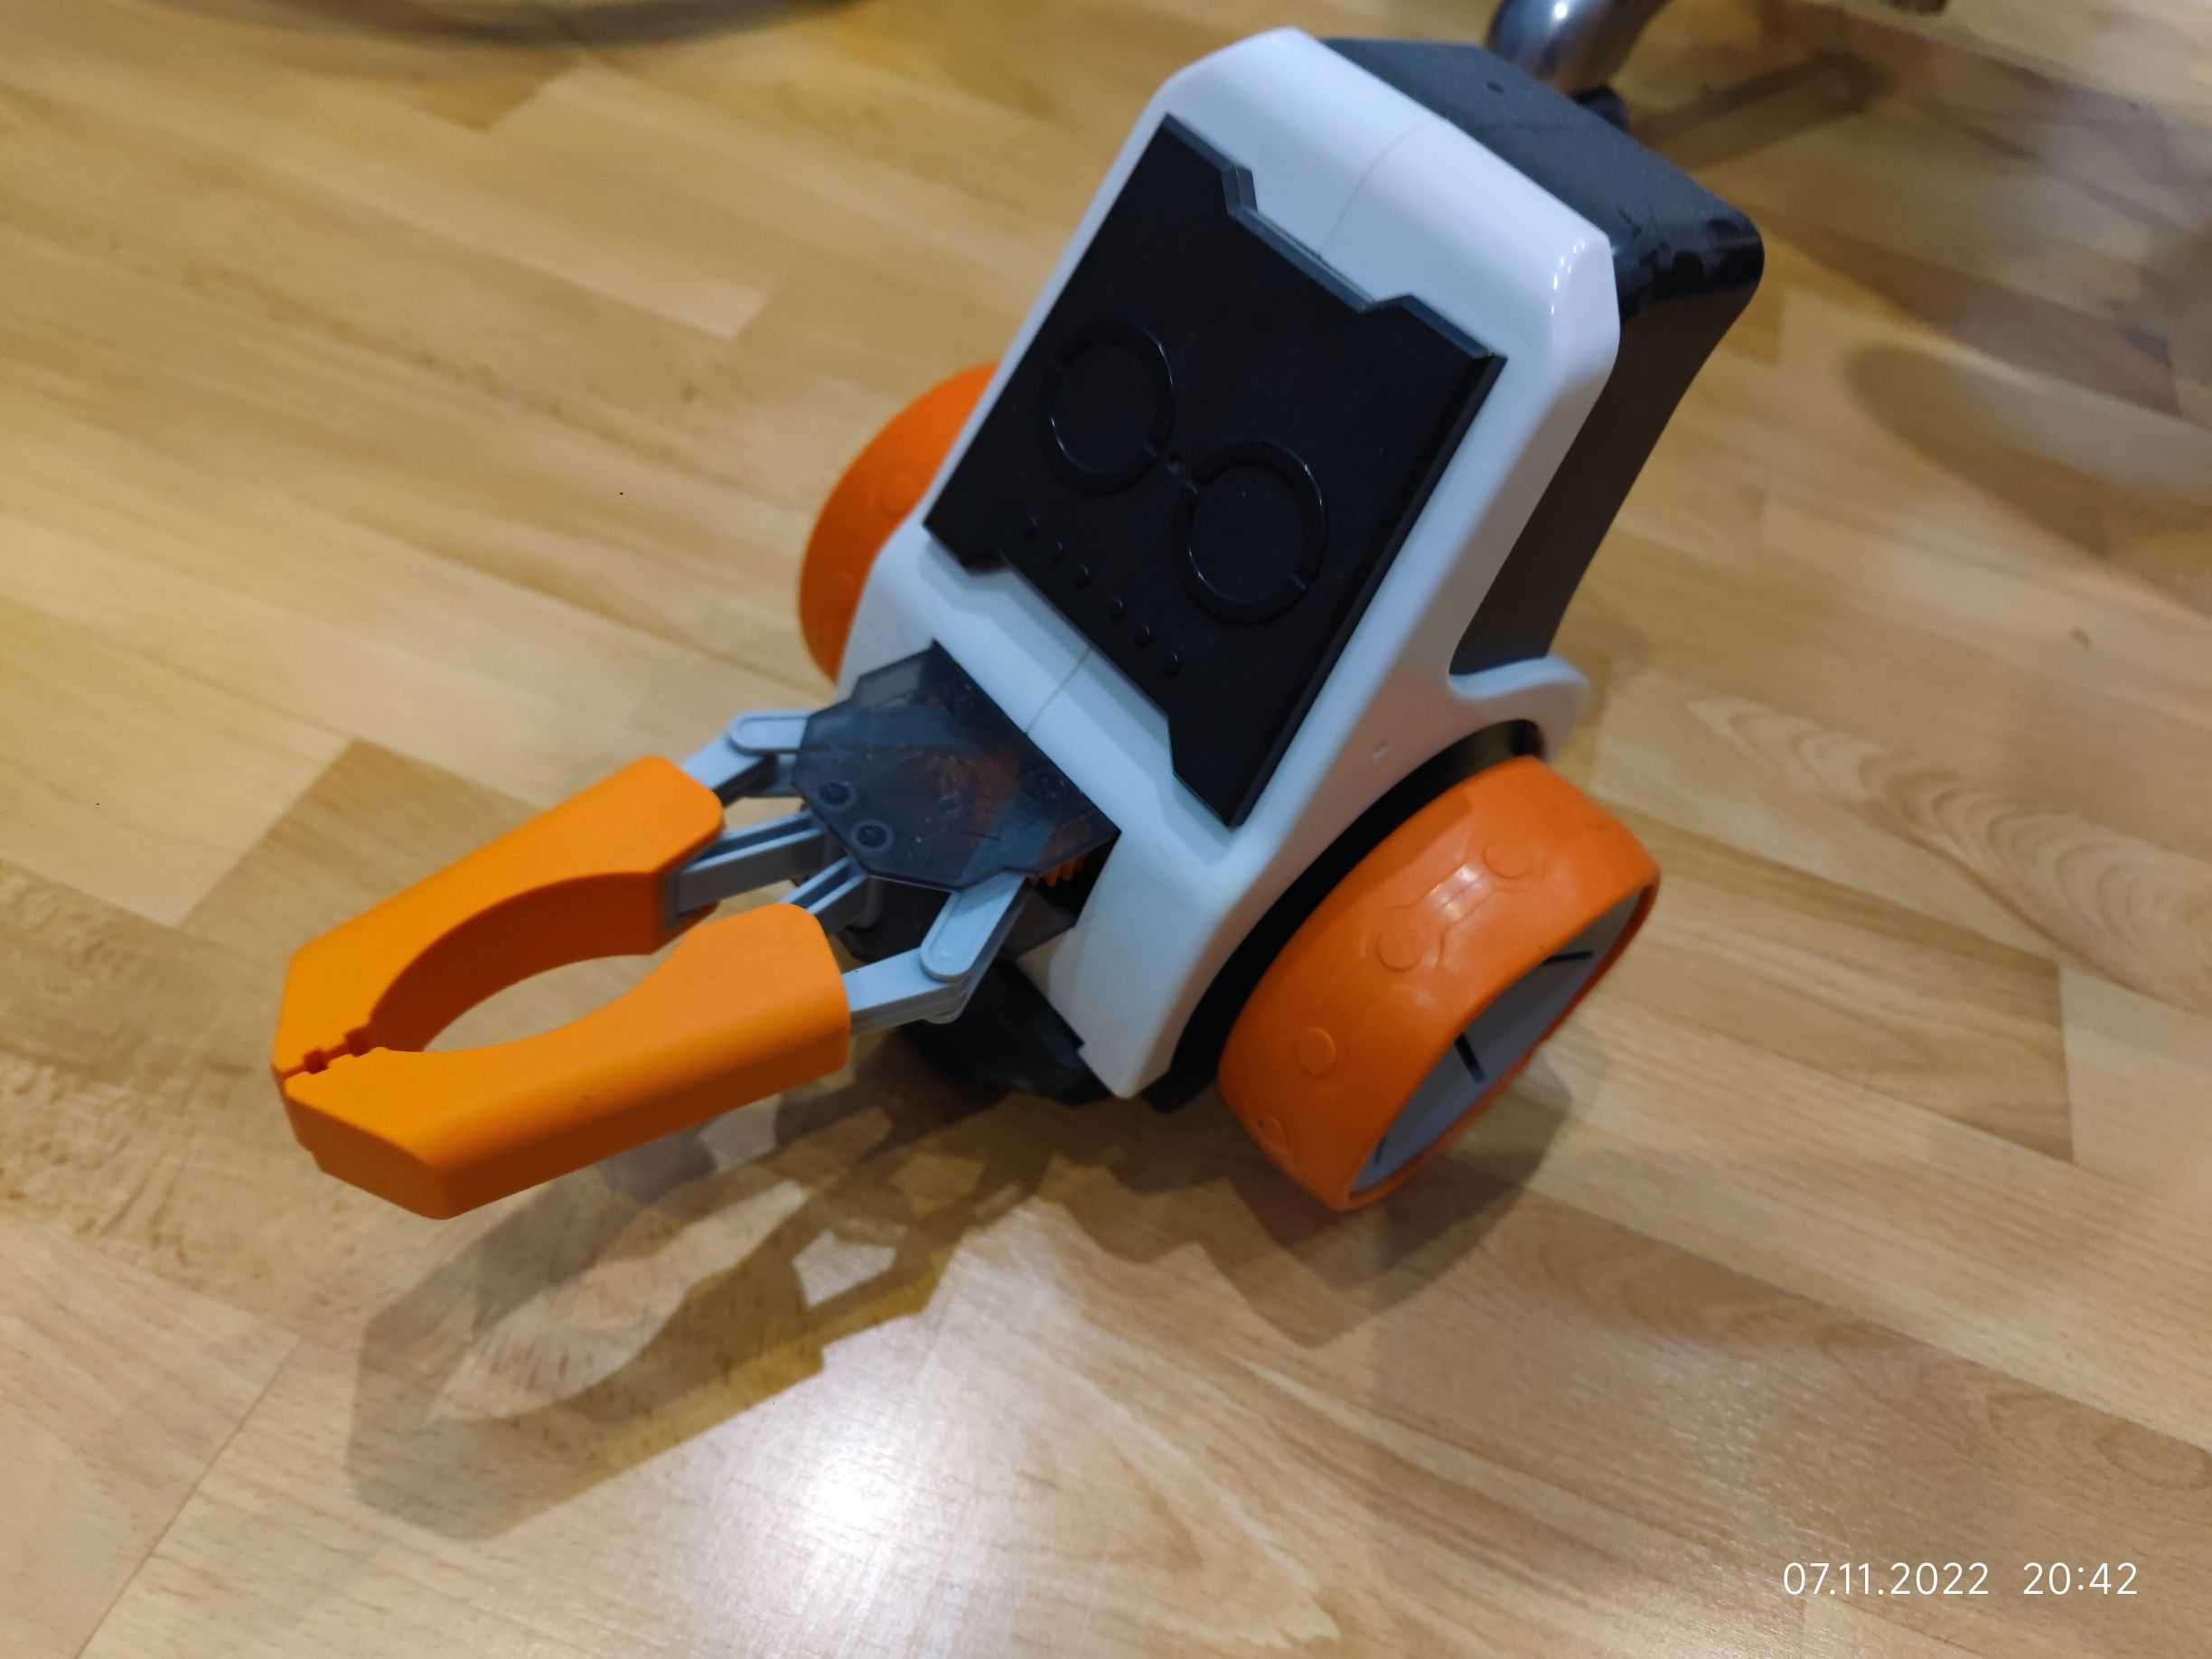 Robonex, Innobot zdalnie sterowany robot smartfon programowany